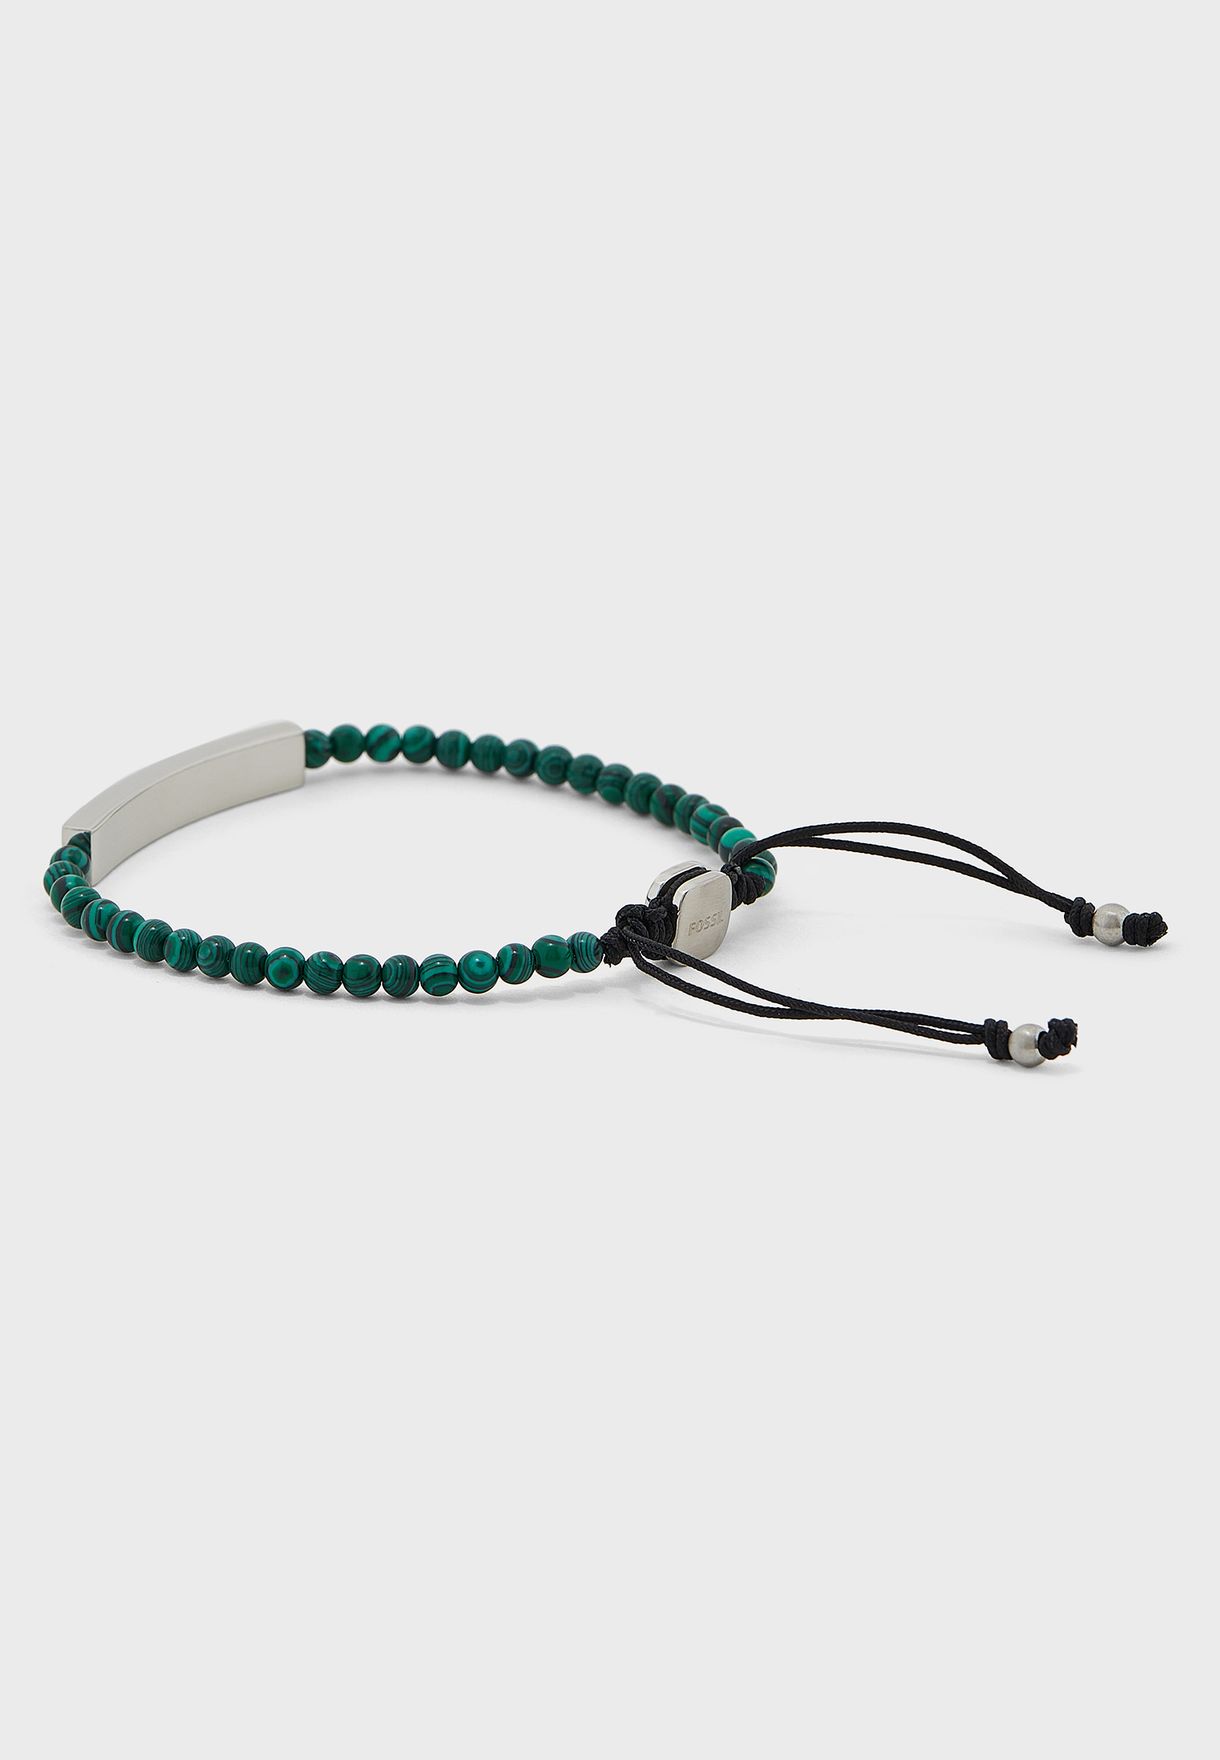 Jf04229040 Vintage Casual Bracelet